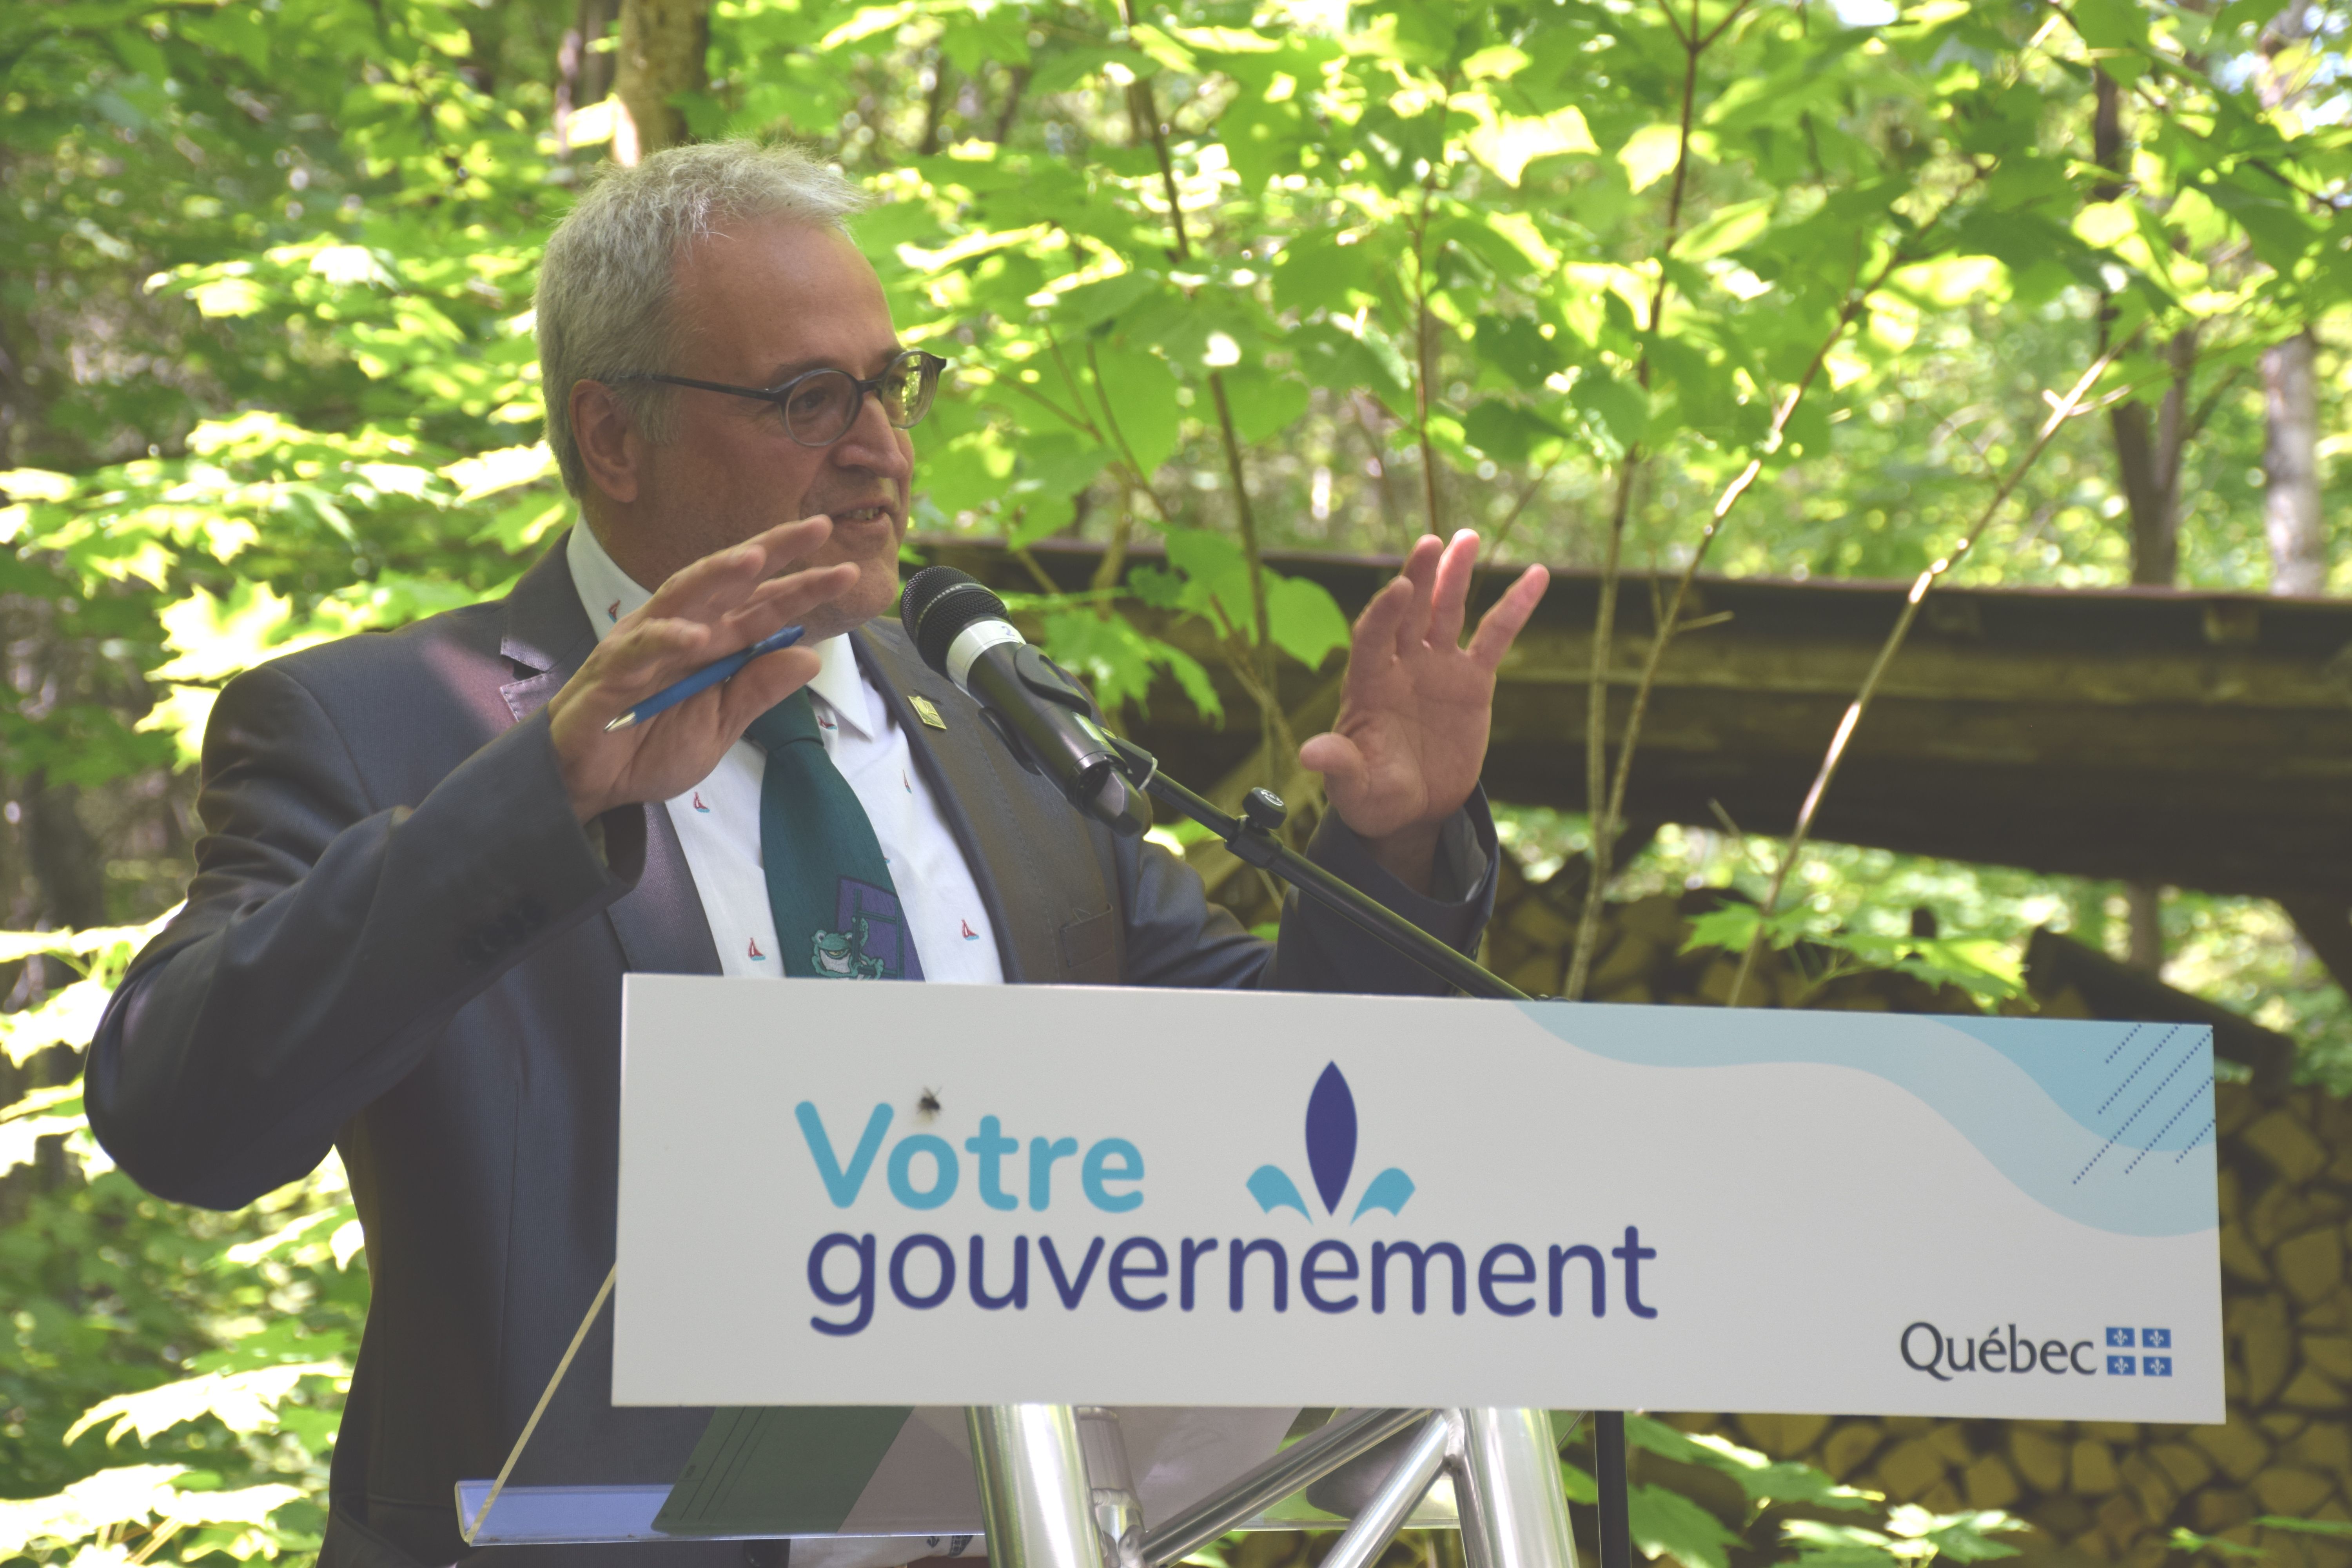 « Les forêts privées du Québec ont un potentiel de croissance annuelle des plus élevés! Ce programme s’inscrit pleinement dans notre action gouvernementale visant à soutenir la création de richesse et d’emplois du secteur forestier tout en assurant la pérennité de la ressource forestière et de ses bénéfices environnementaux. » souligne Pierre Dufour, ministre des Forêts, de la Faune et des Parcs et ministre responsable de la région de l’Abitibi-Témiscamingue et de la région du Nord-du-Québec.